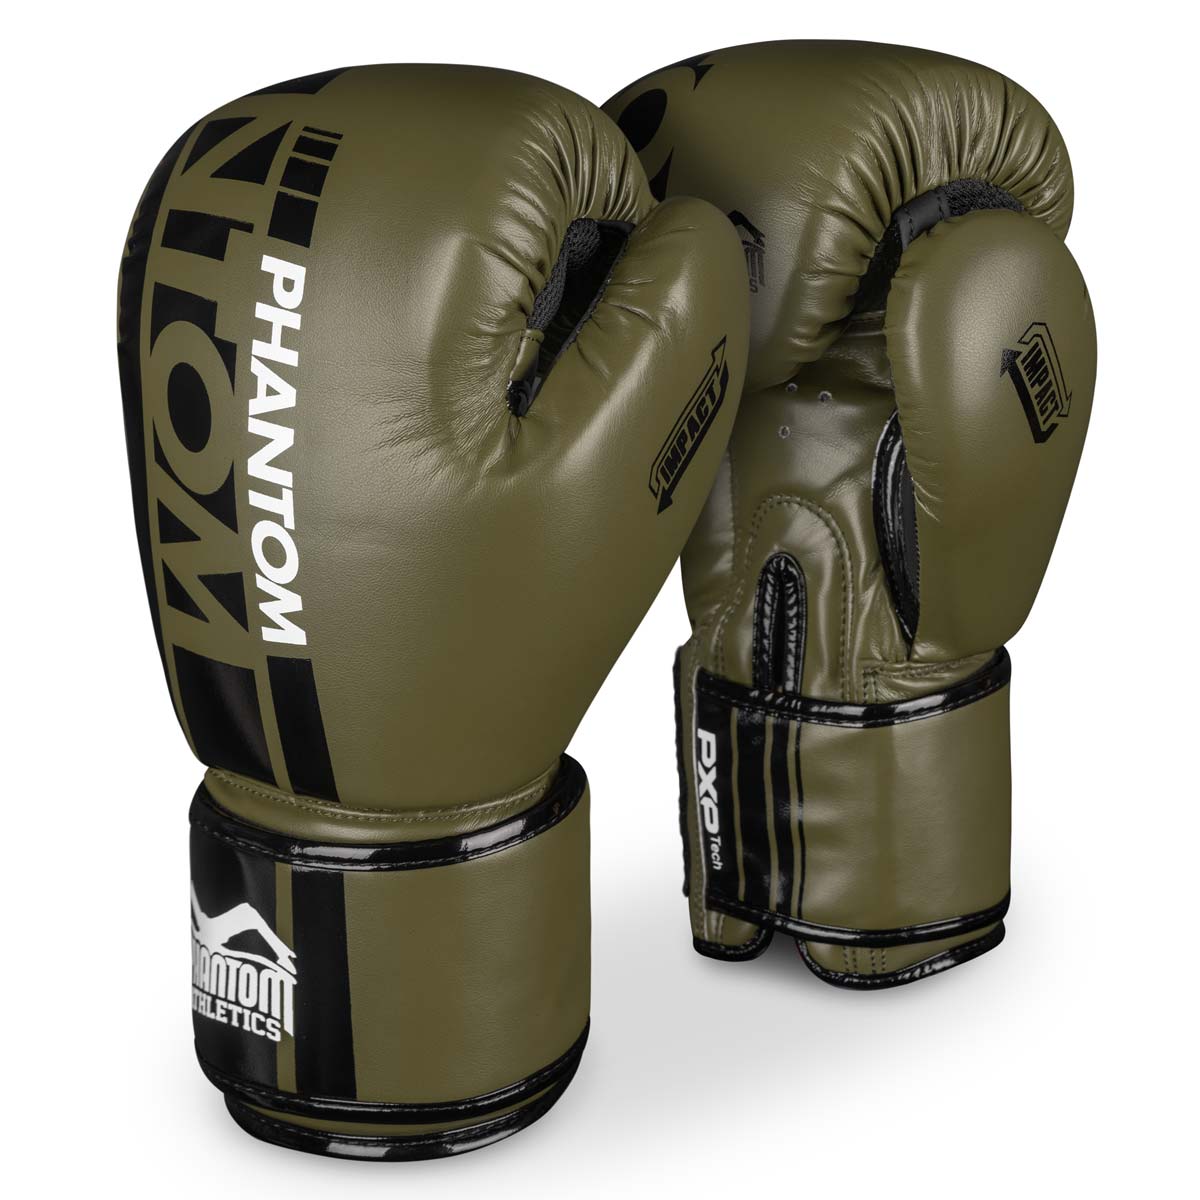 Gants de boxe Phantom APEX Army Green pour l'entraînement aux arts martiaux